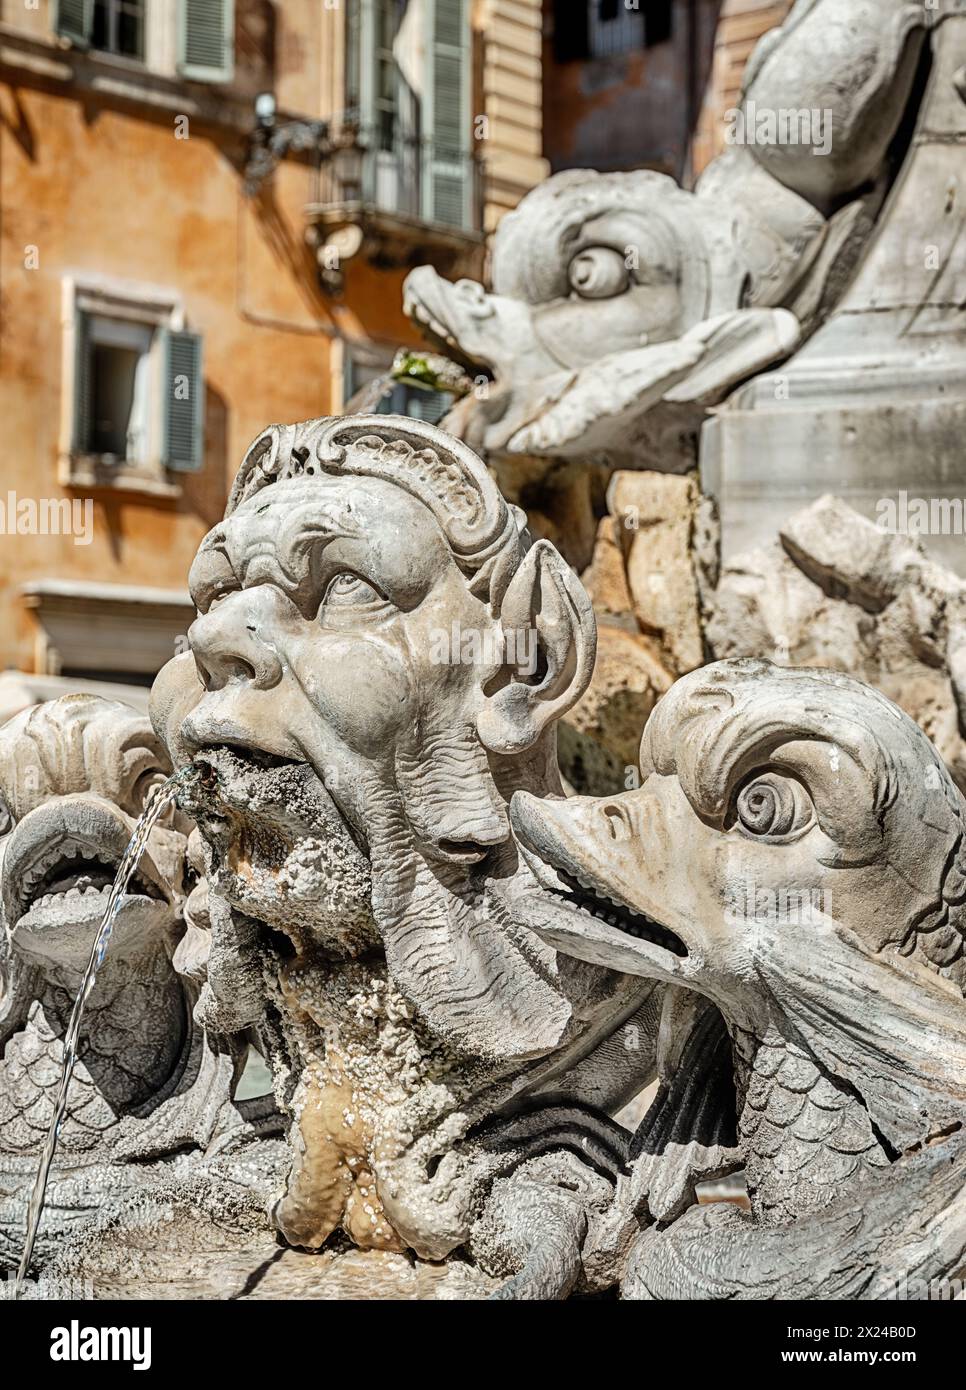 La fontaine fantaisiste de la Fontana del Pantheon à Rome présente de l'eau provenant d'hommes et de poissons. Banque D'Images